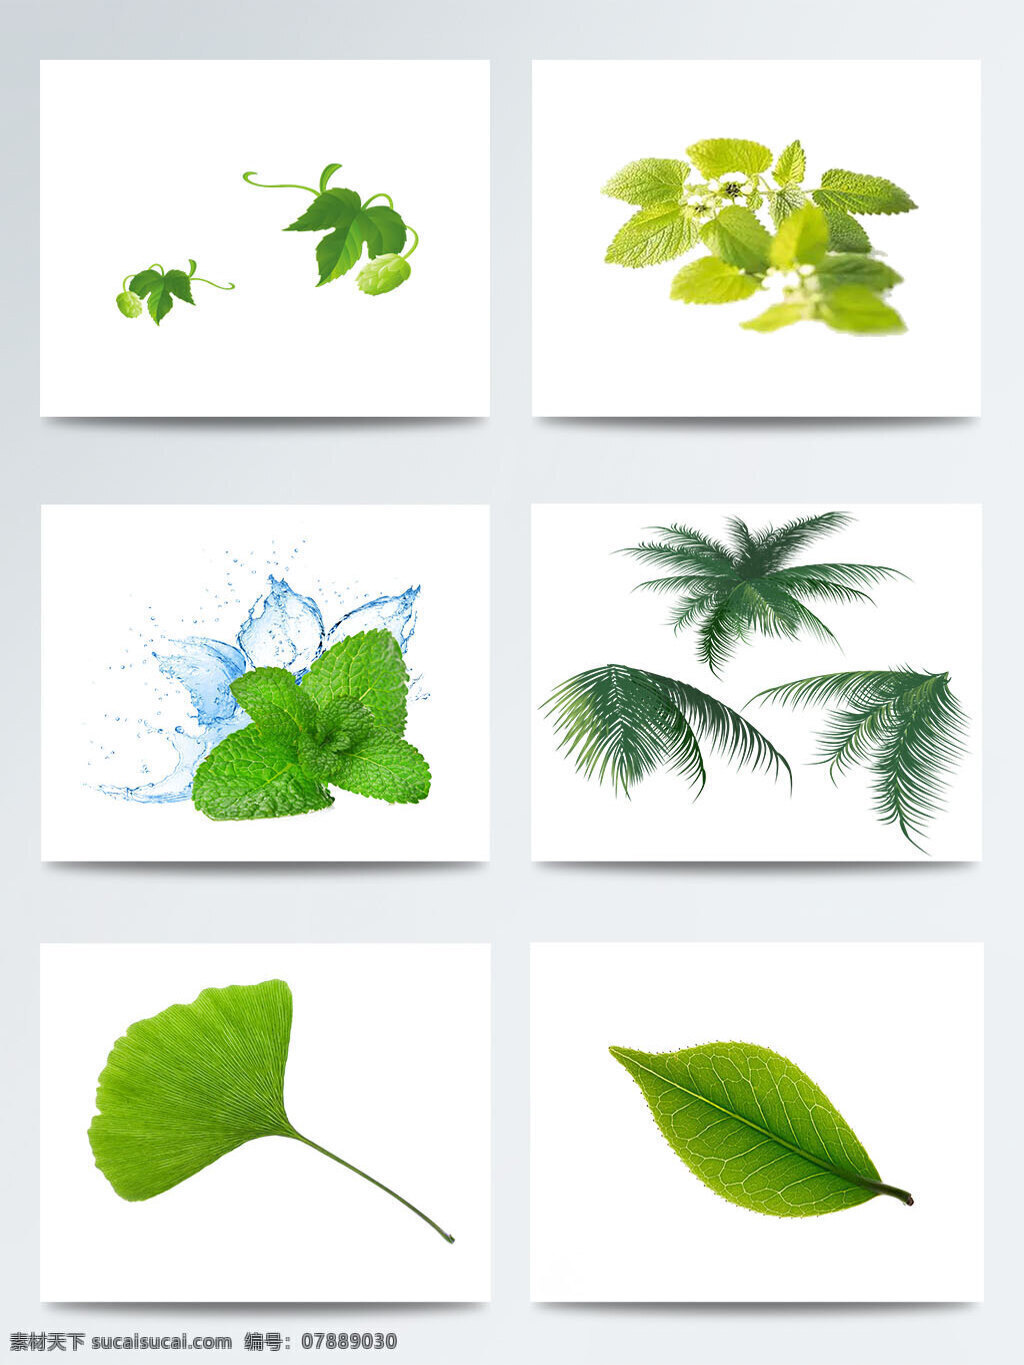 二十四节气 立春 绿色 元素 叶子 集合 传统 节气 立春节气 绿色树叶图案 绿色元素 树叶元素图案